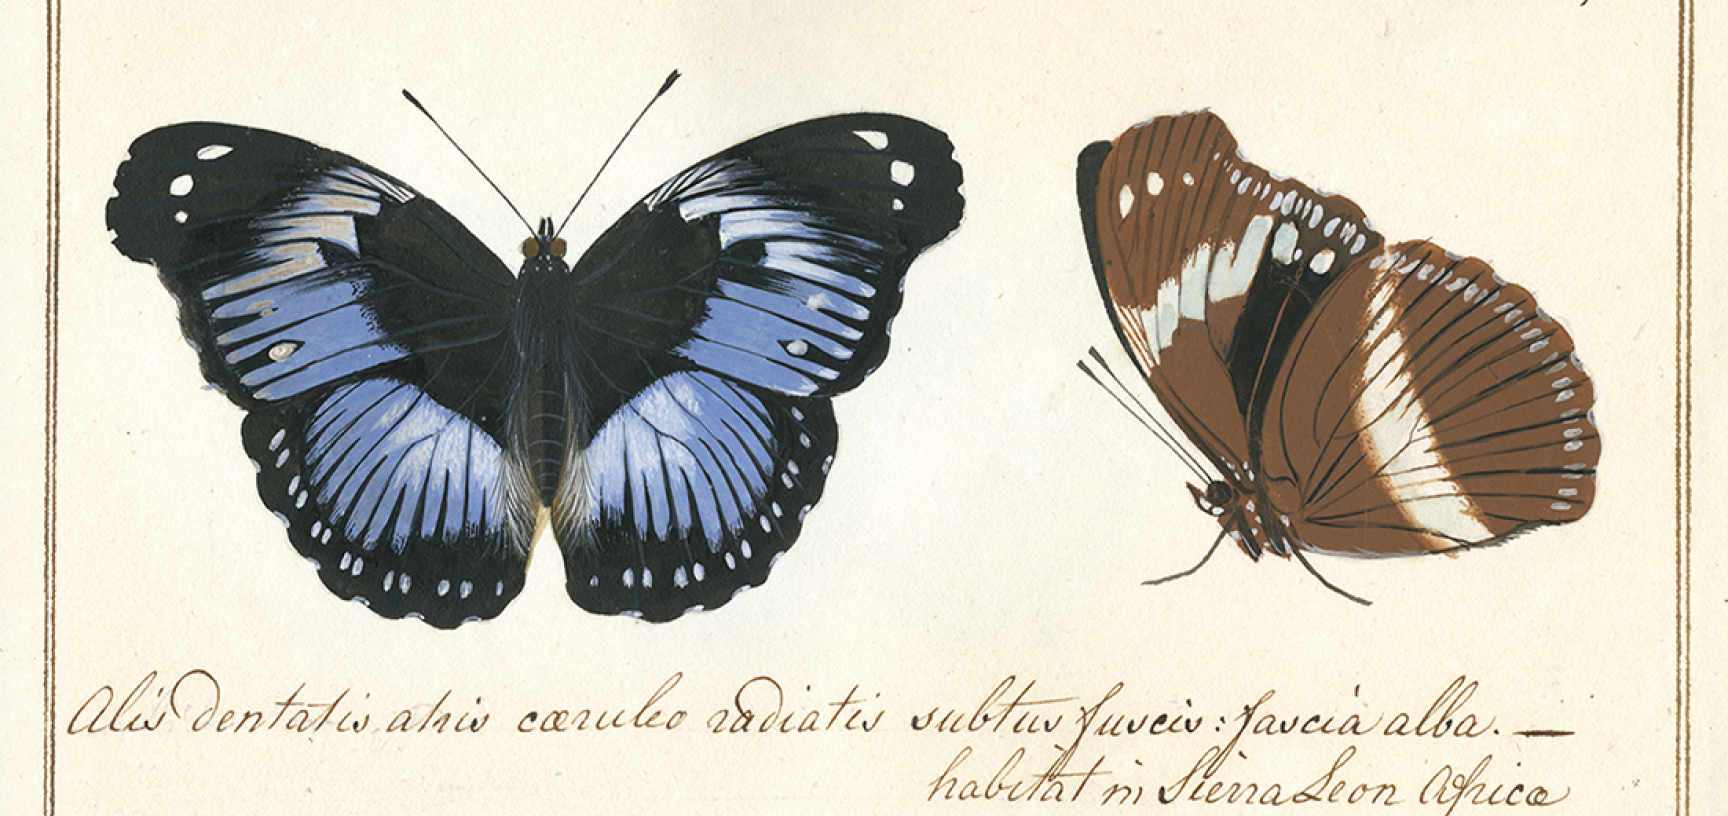 Papilio salmacis